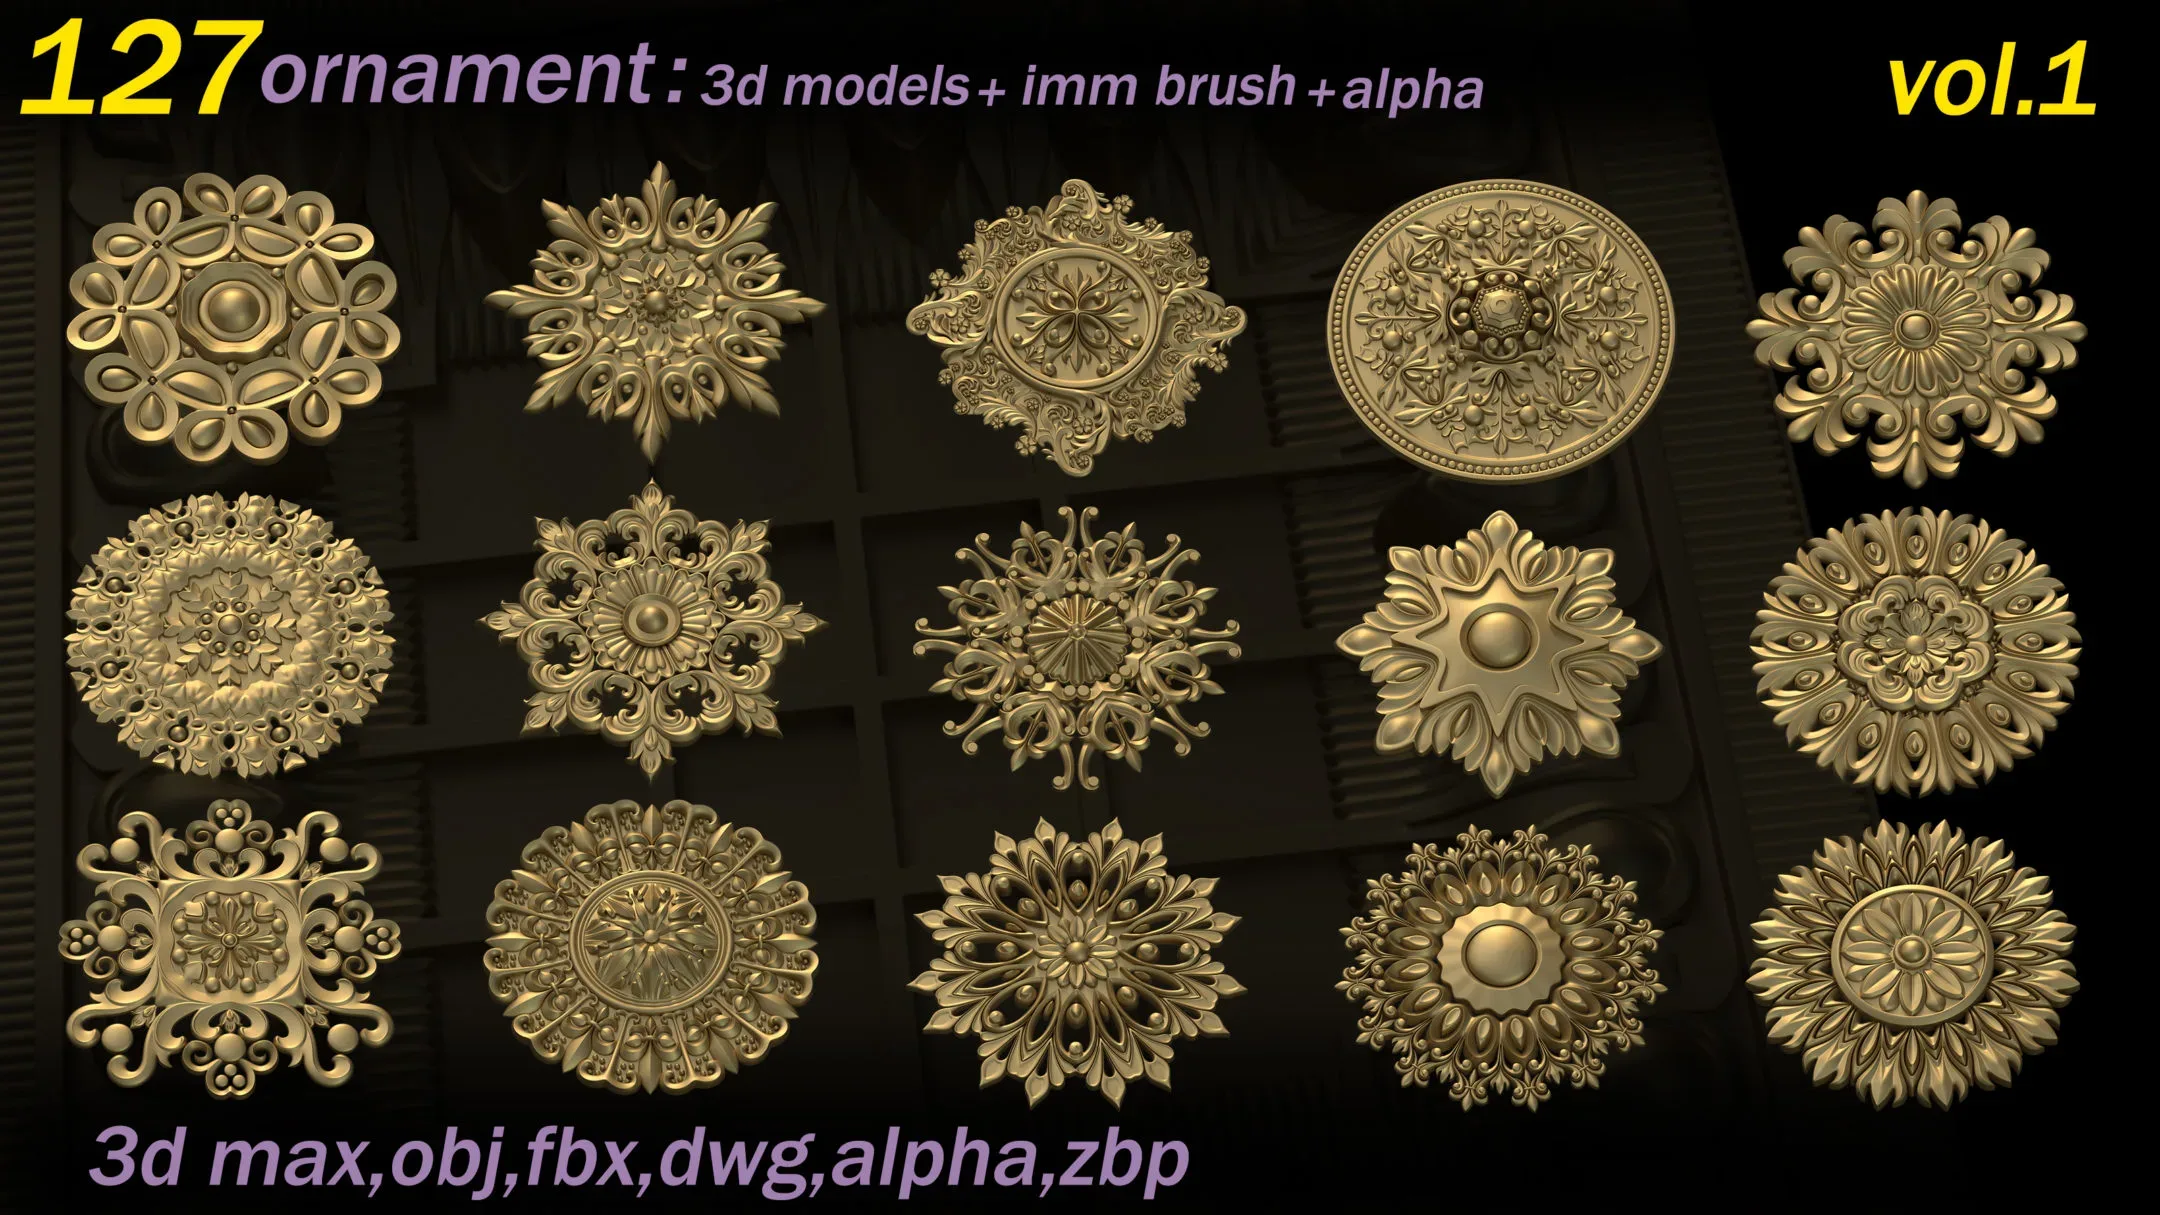 127 Ornament 3D Models+IMMBrushes+Alphas_VOL.01